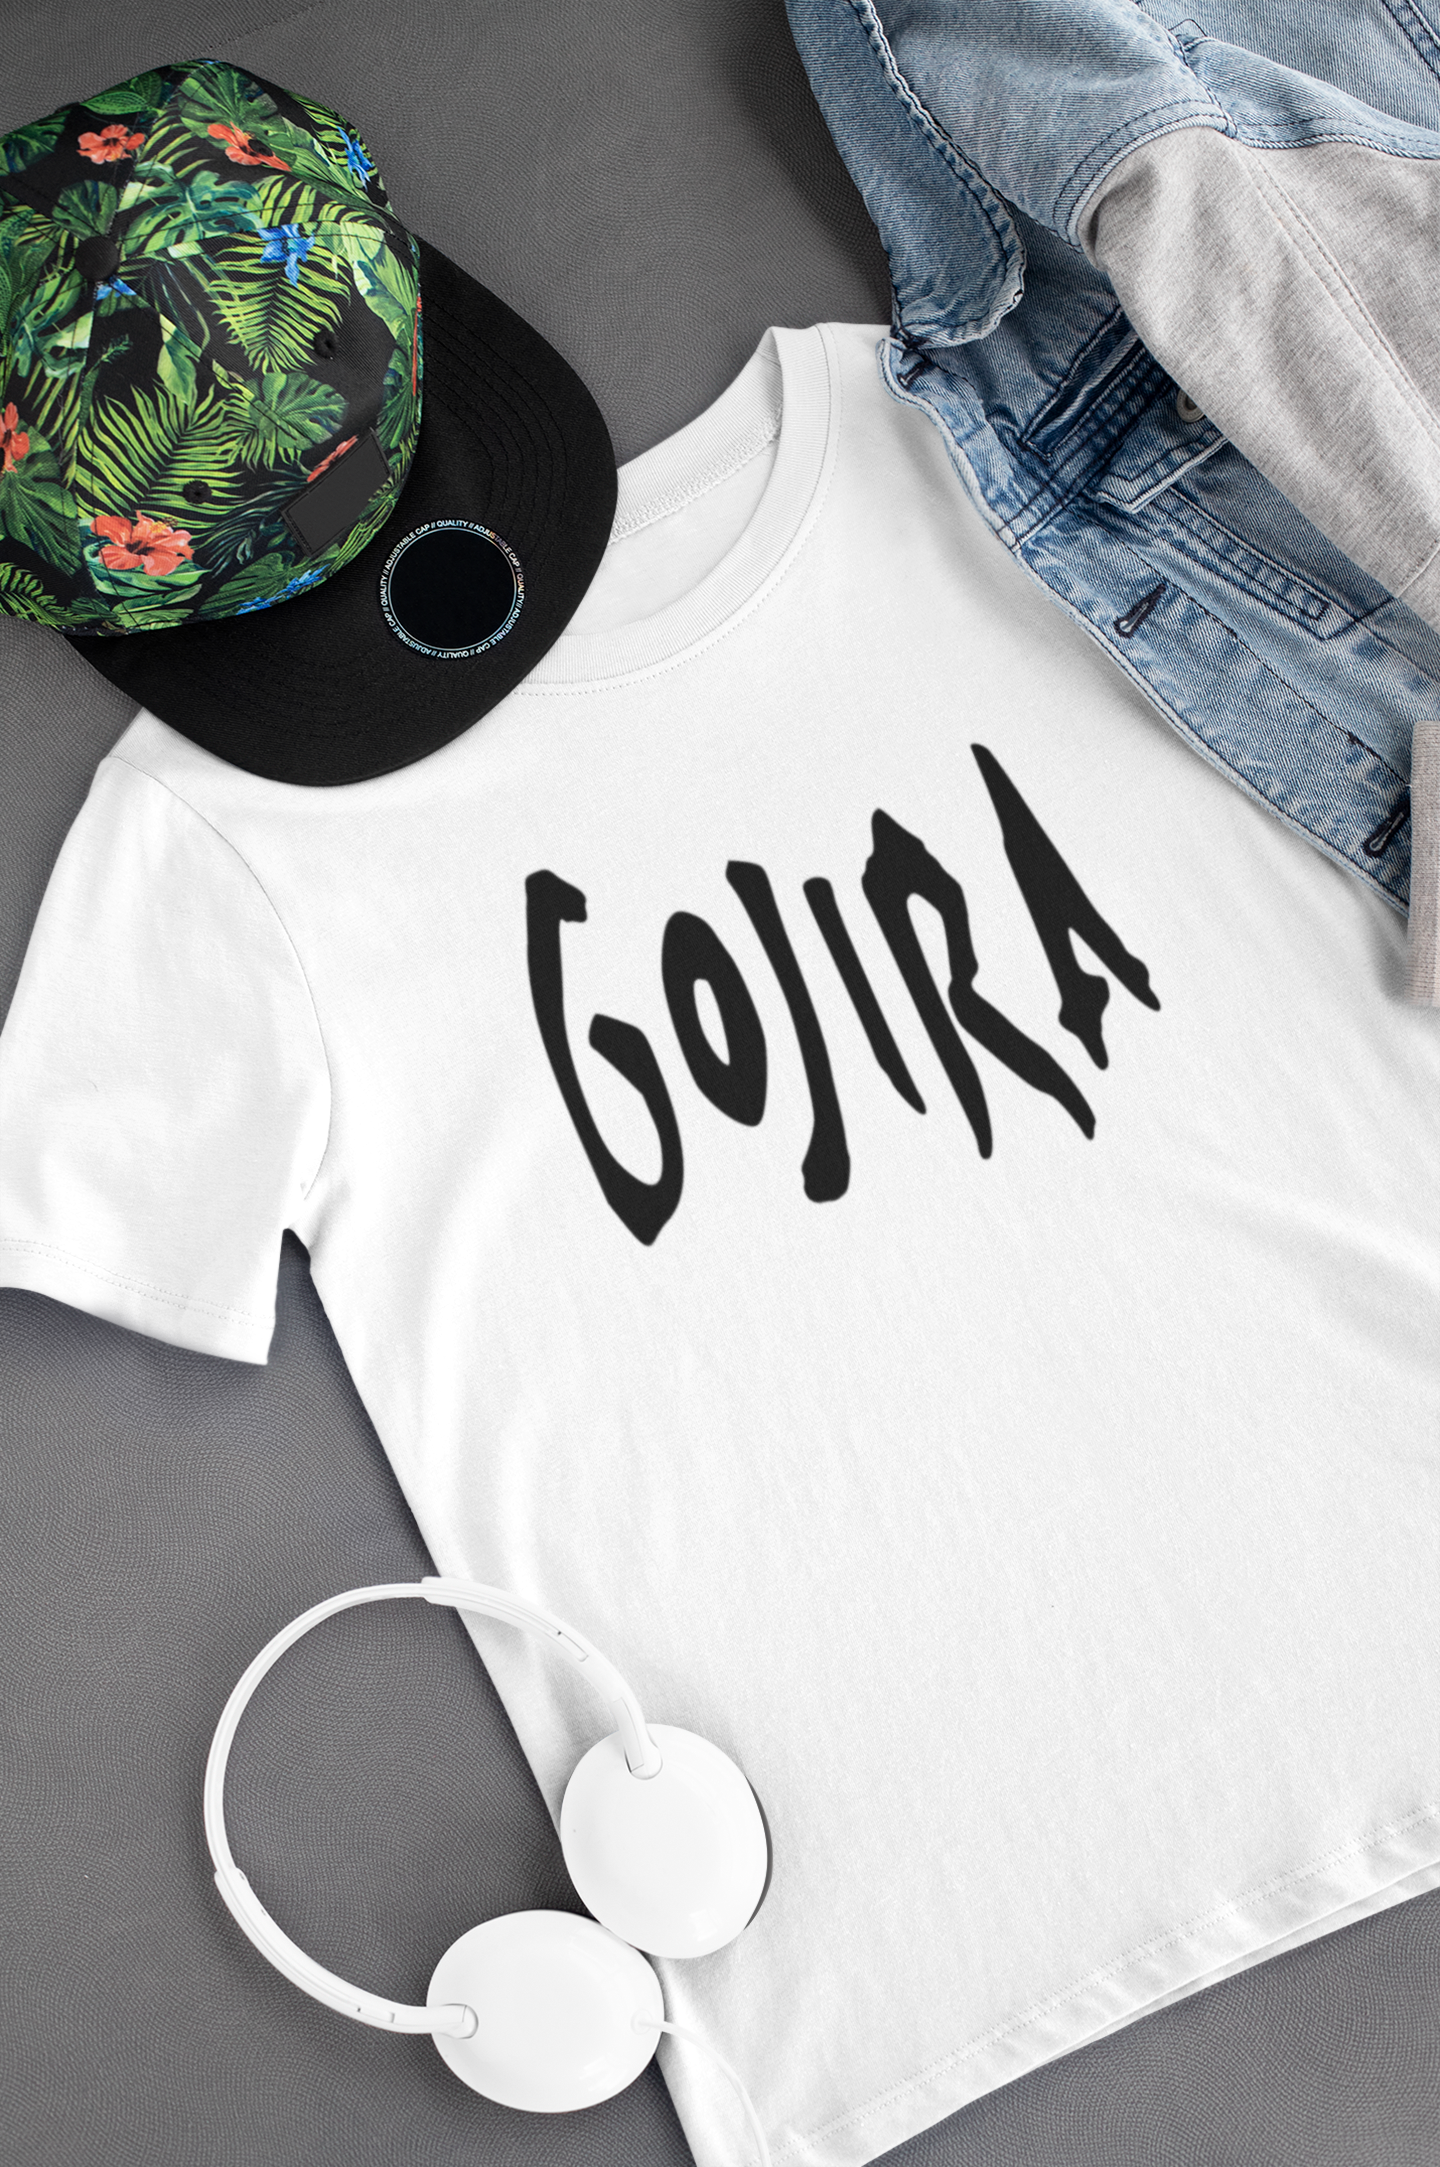 Camiseta "Gojira" Clássica - Música